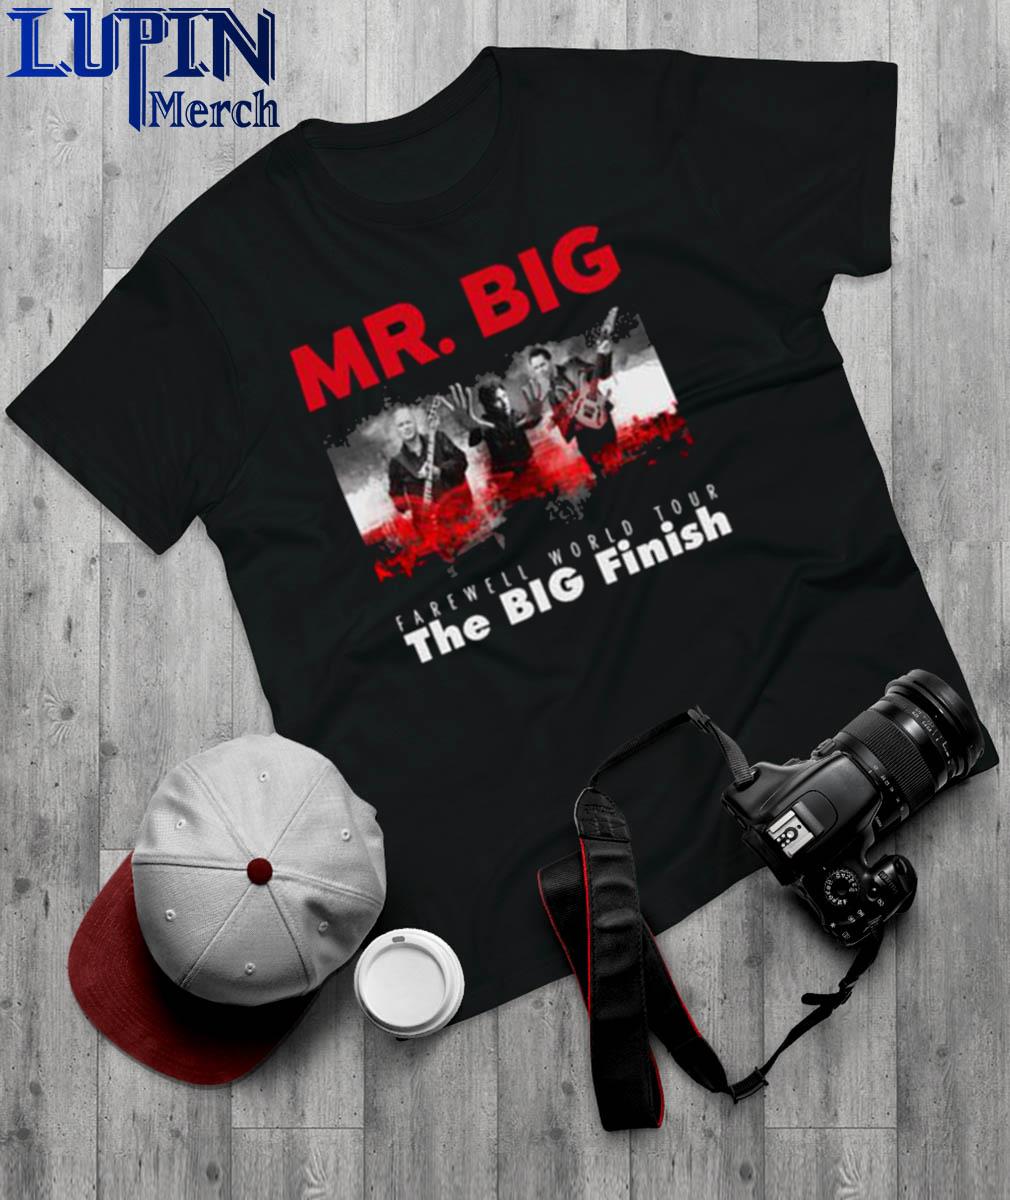 MR.BIG Tシャツ　2023 ツアー